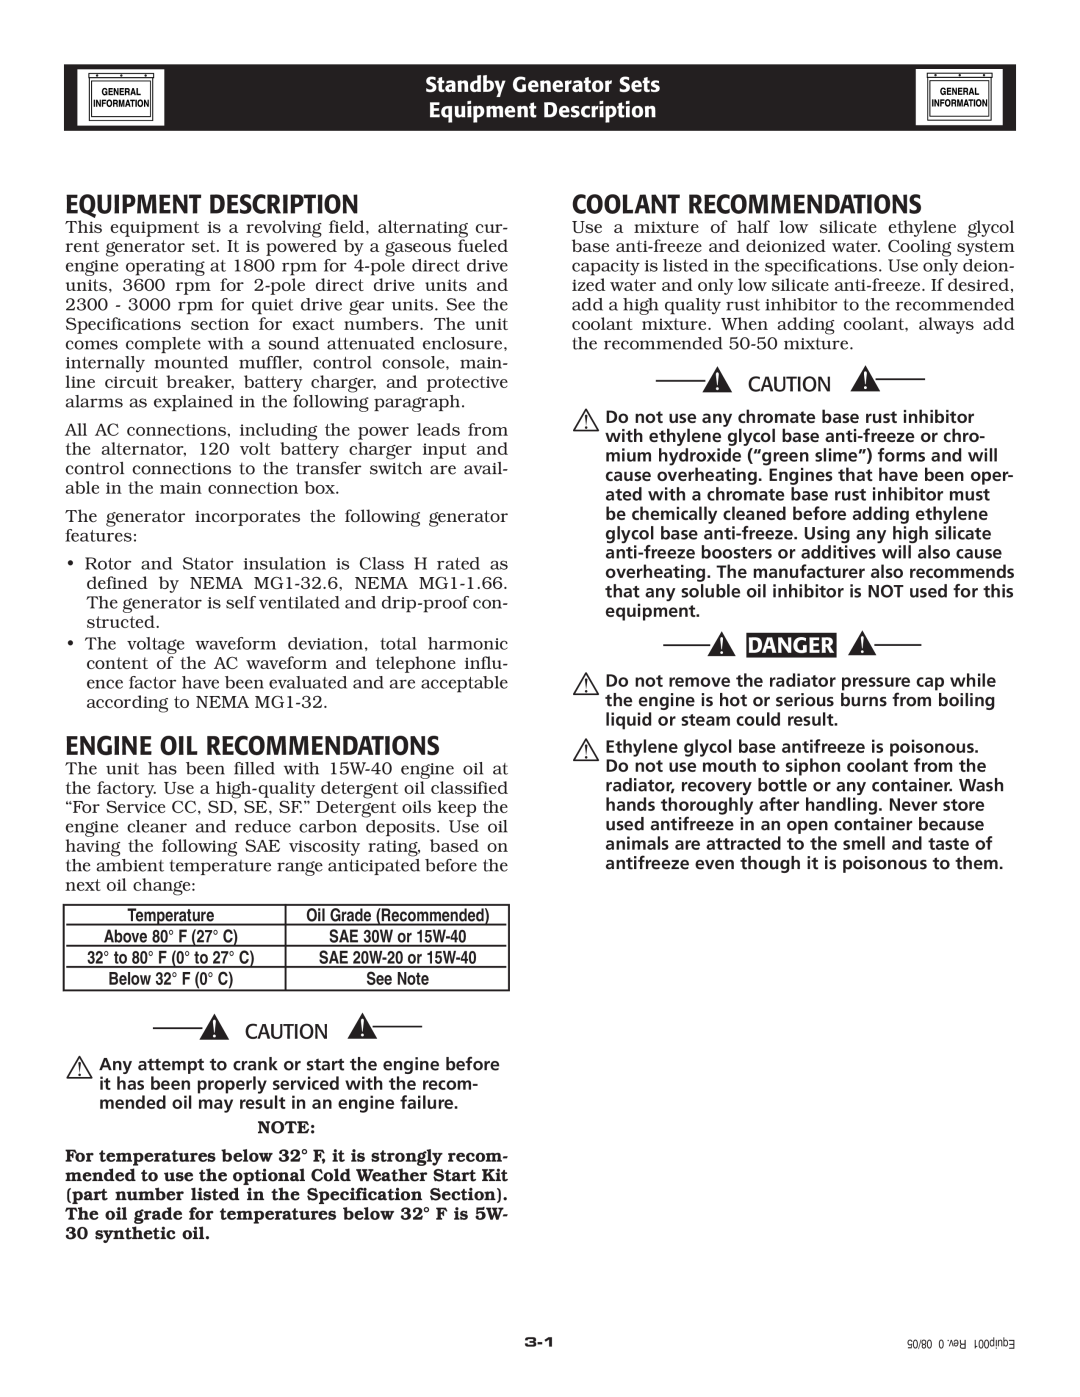 Generac Power Systems 005219-0 Equipment Description, Engine Oil Recommendations, Coolant Recommendations, Danger 